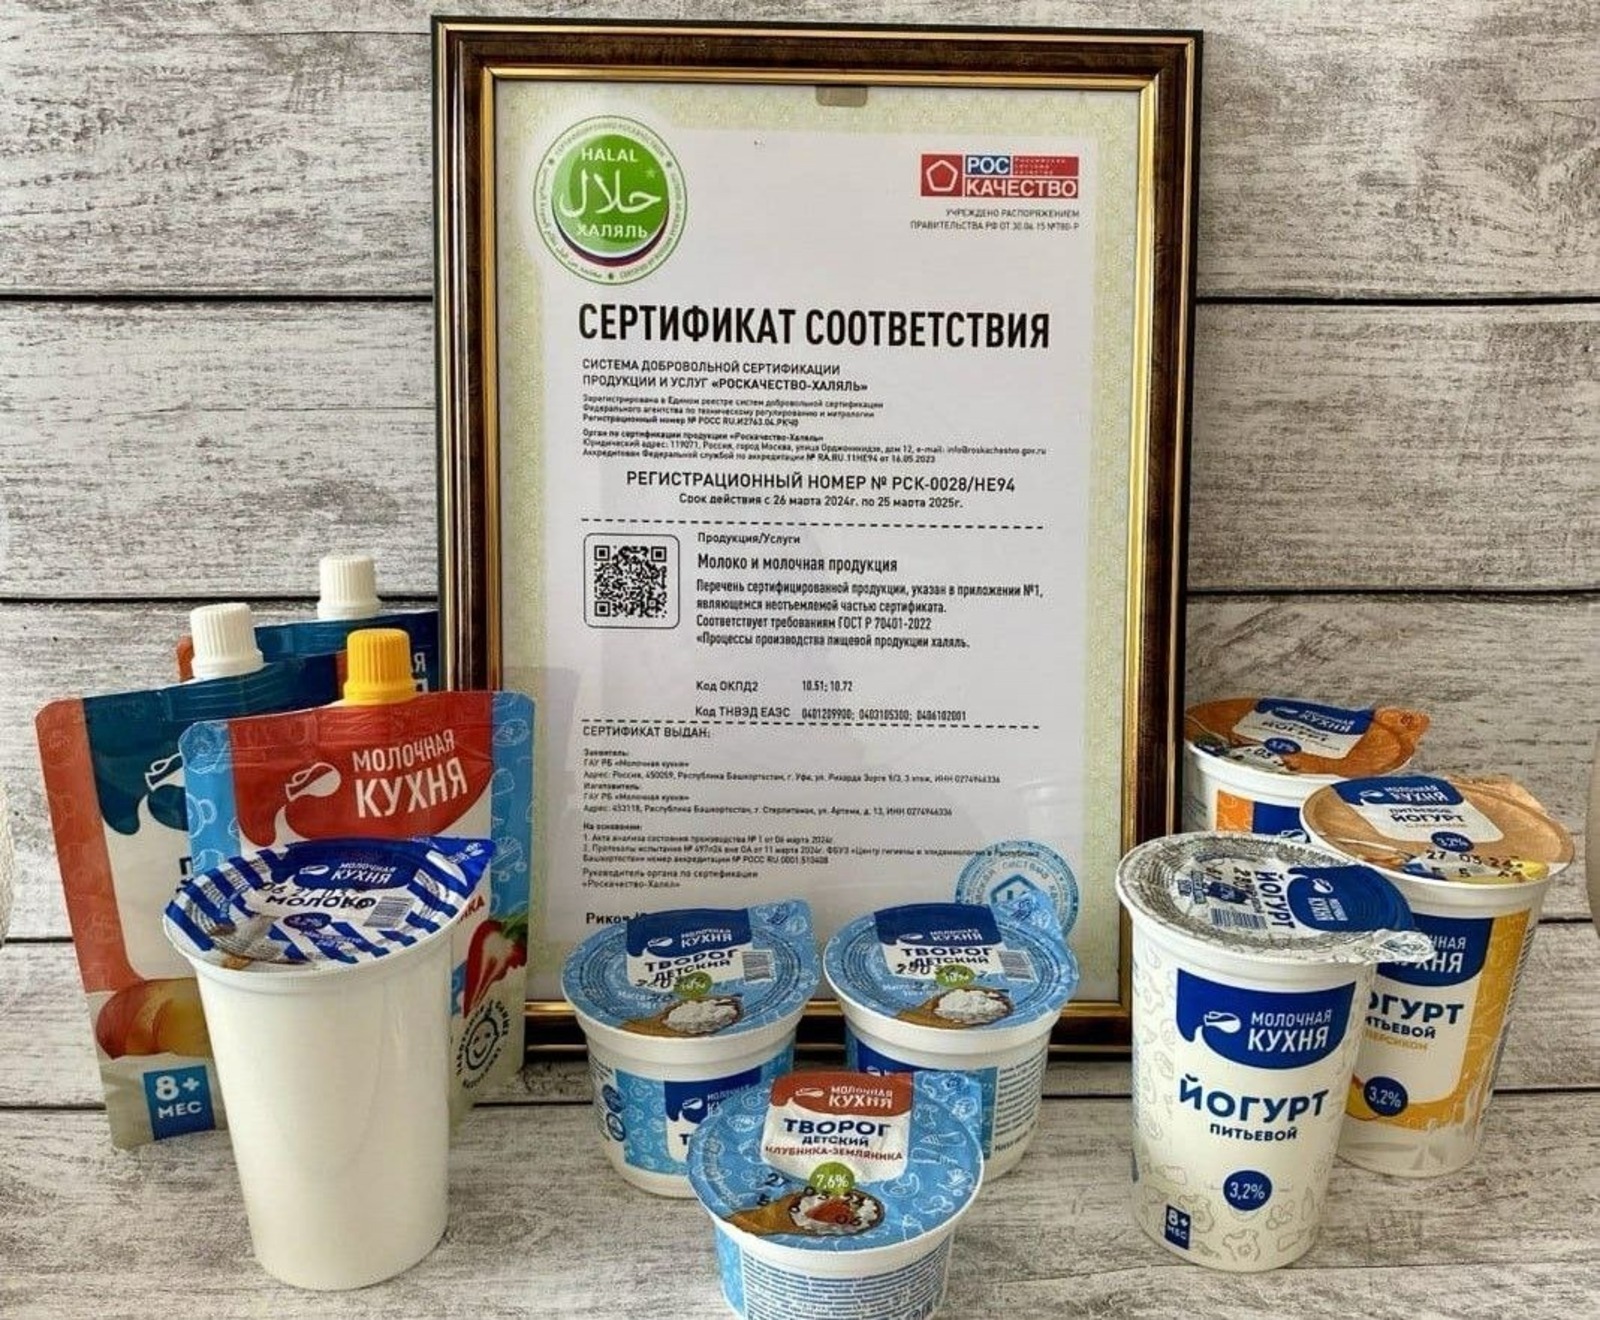 «Молочная кухня» Башкирии получила сертификат «Роскачество-Халяль»